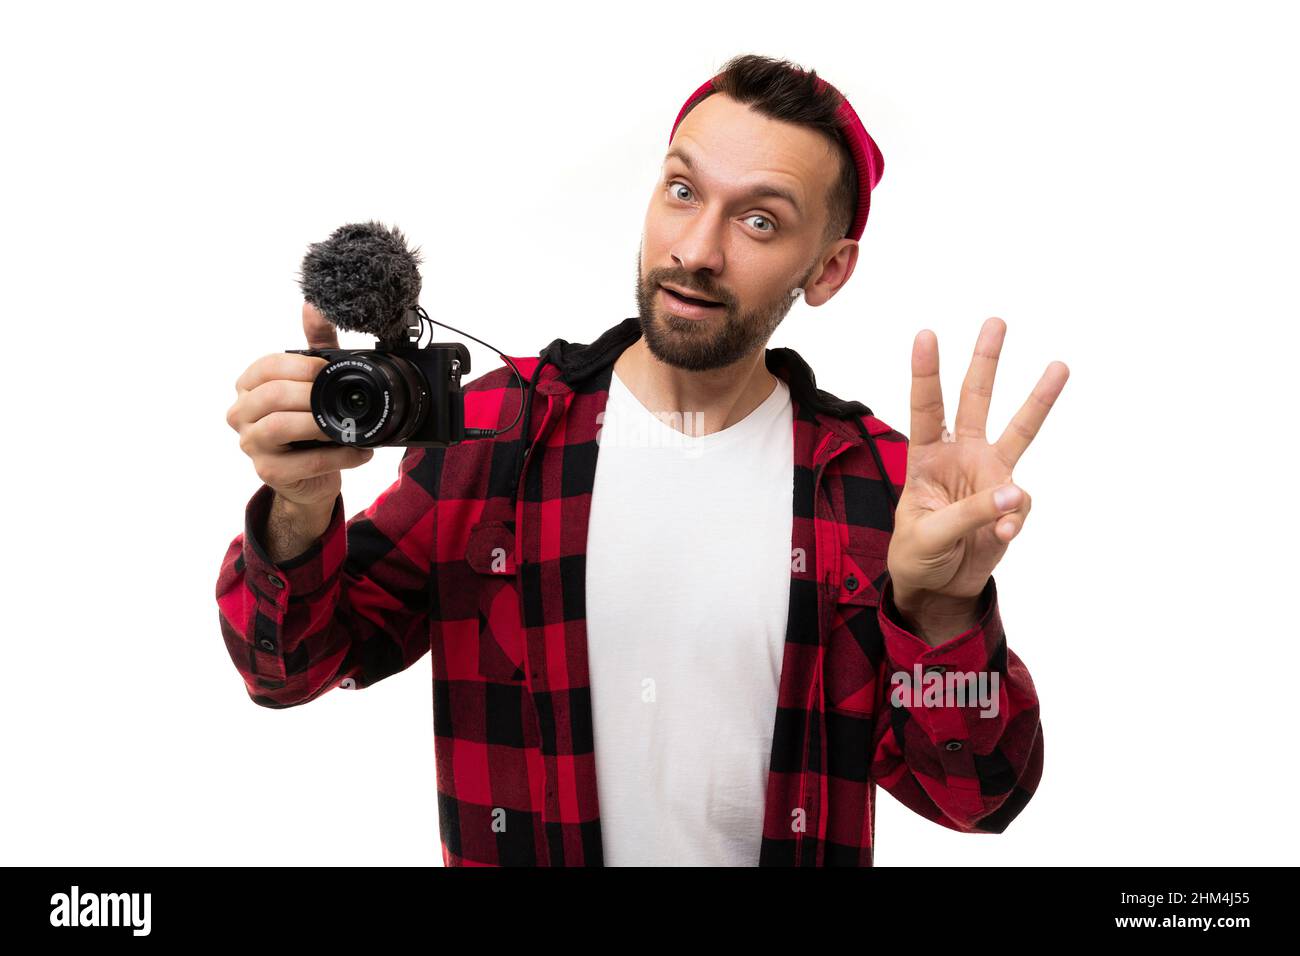 Ein bärtiger Blogger mit rotem Hut und Hemd in einem schwarz-roten Käfig hält eine Kamera mit einem Mikrofon in den Händen und zeigt die Zahl drei mit einem Stockfoto